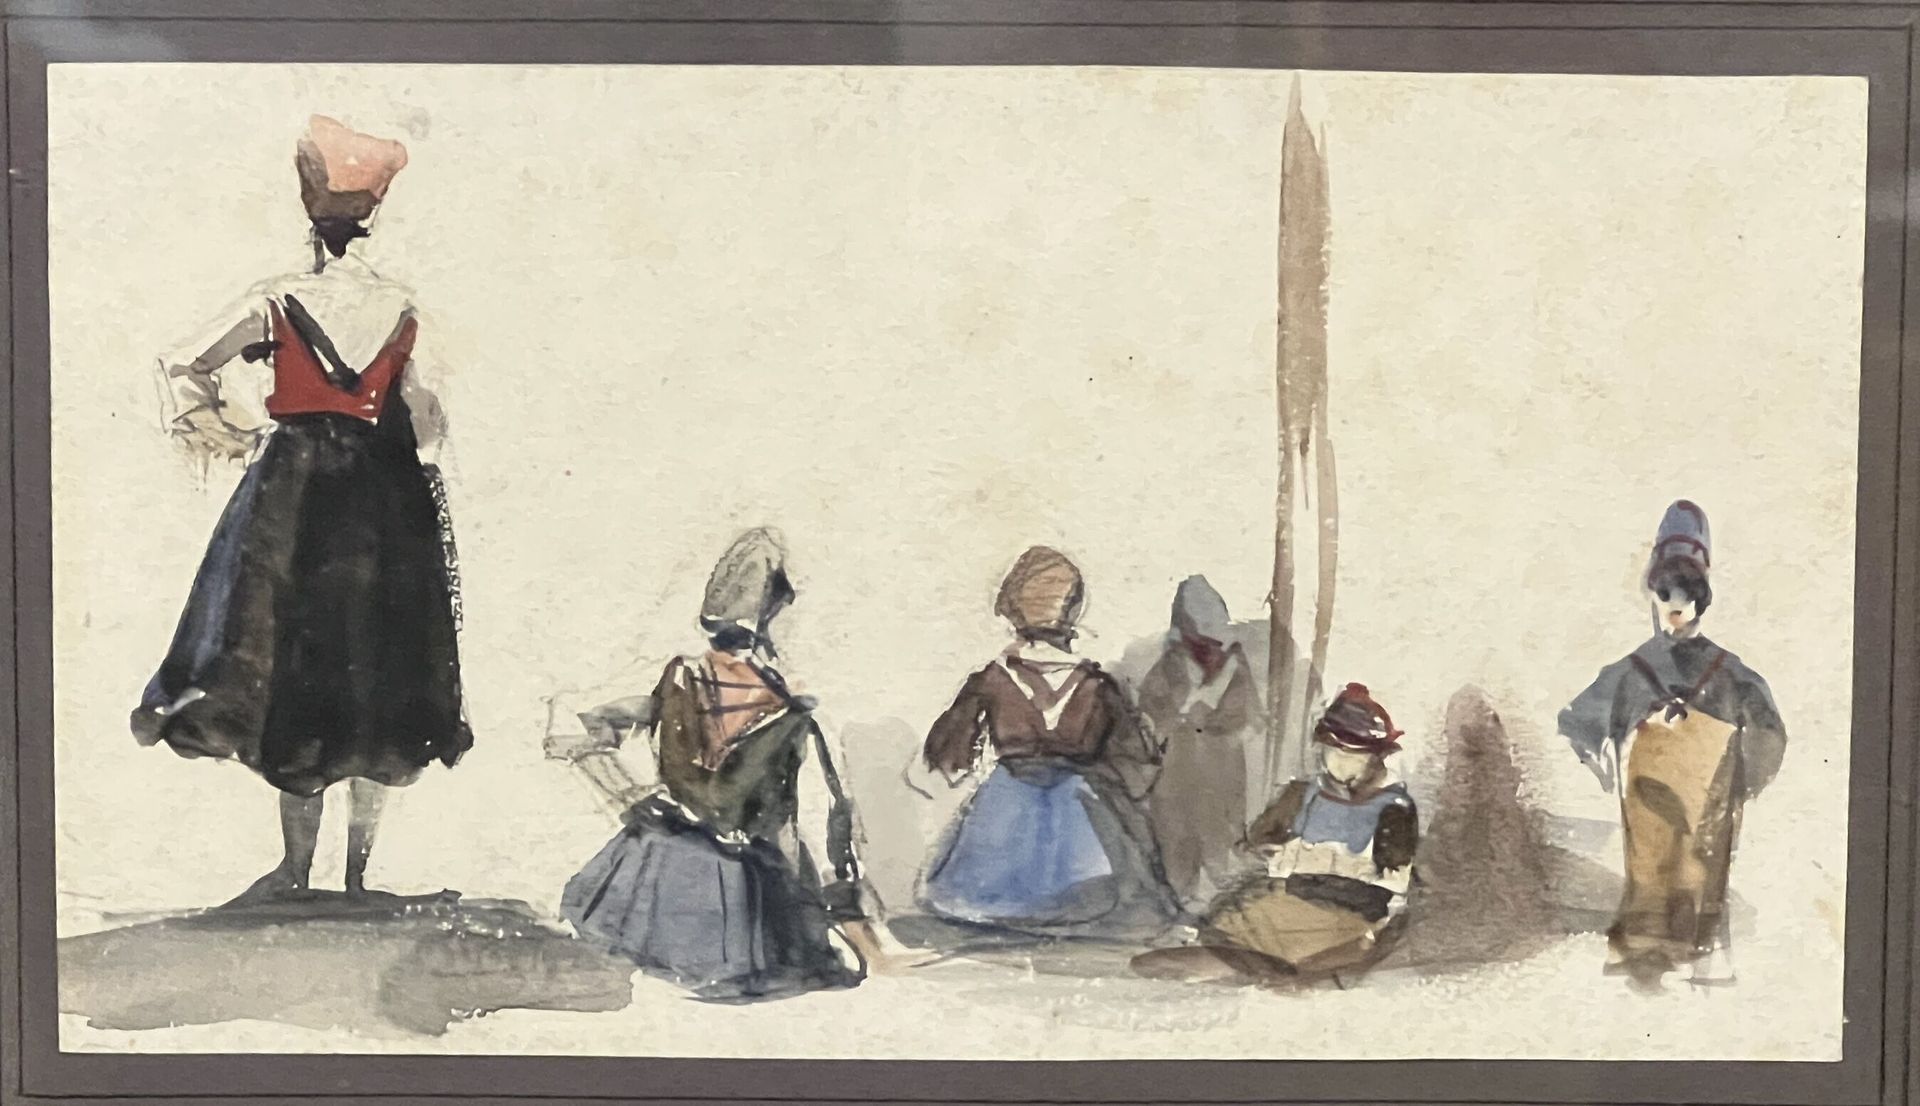 Null 古斯塔夫-弗朗索瓦-莫林 (1809-1886)
"从后面看的人物"。
纸上水彩画。
11.5 x 18厘米。